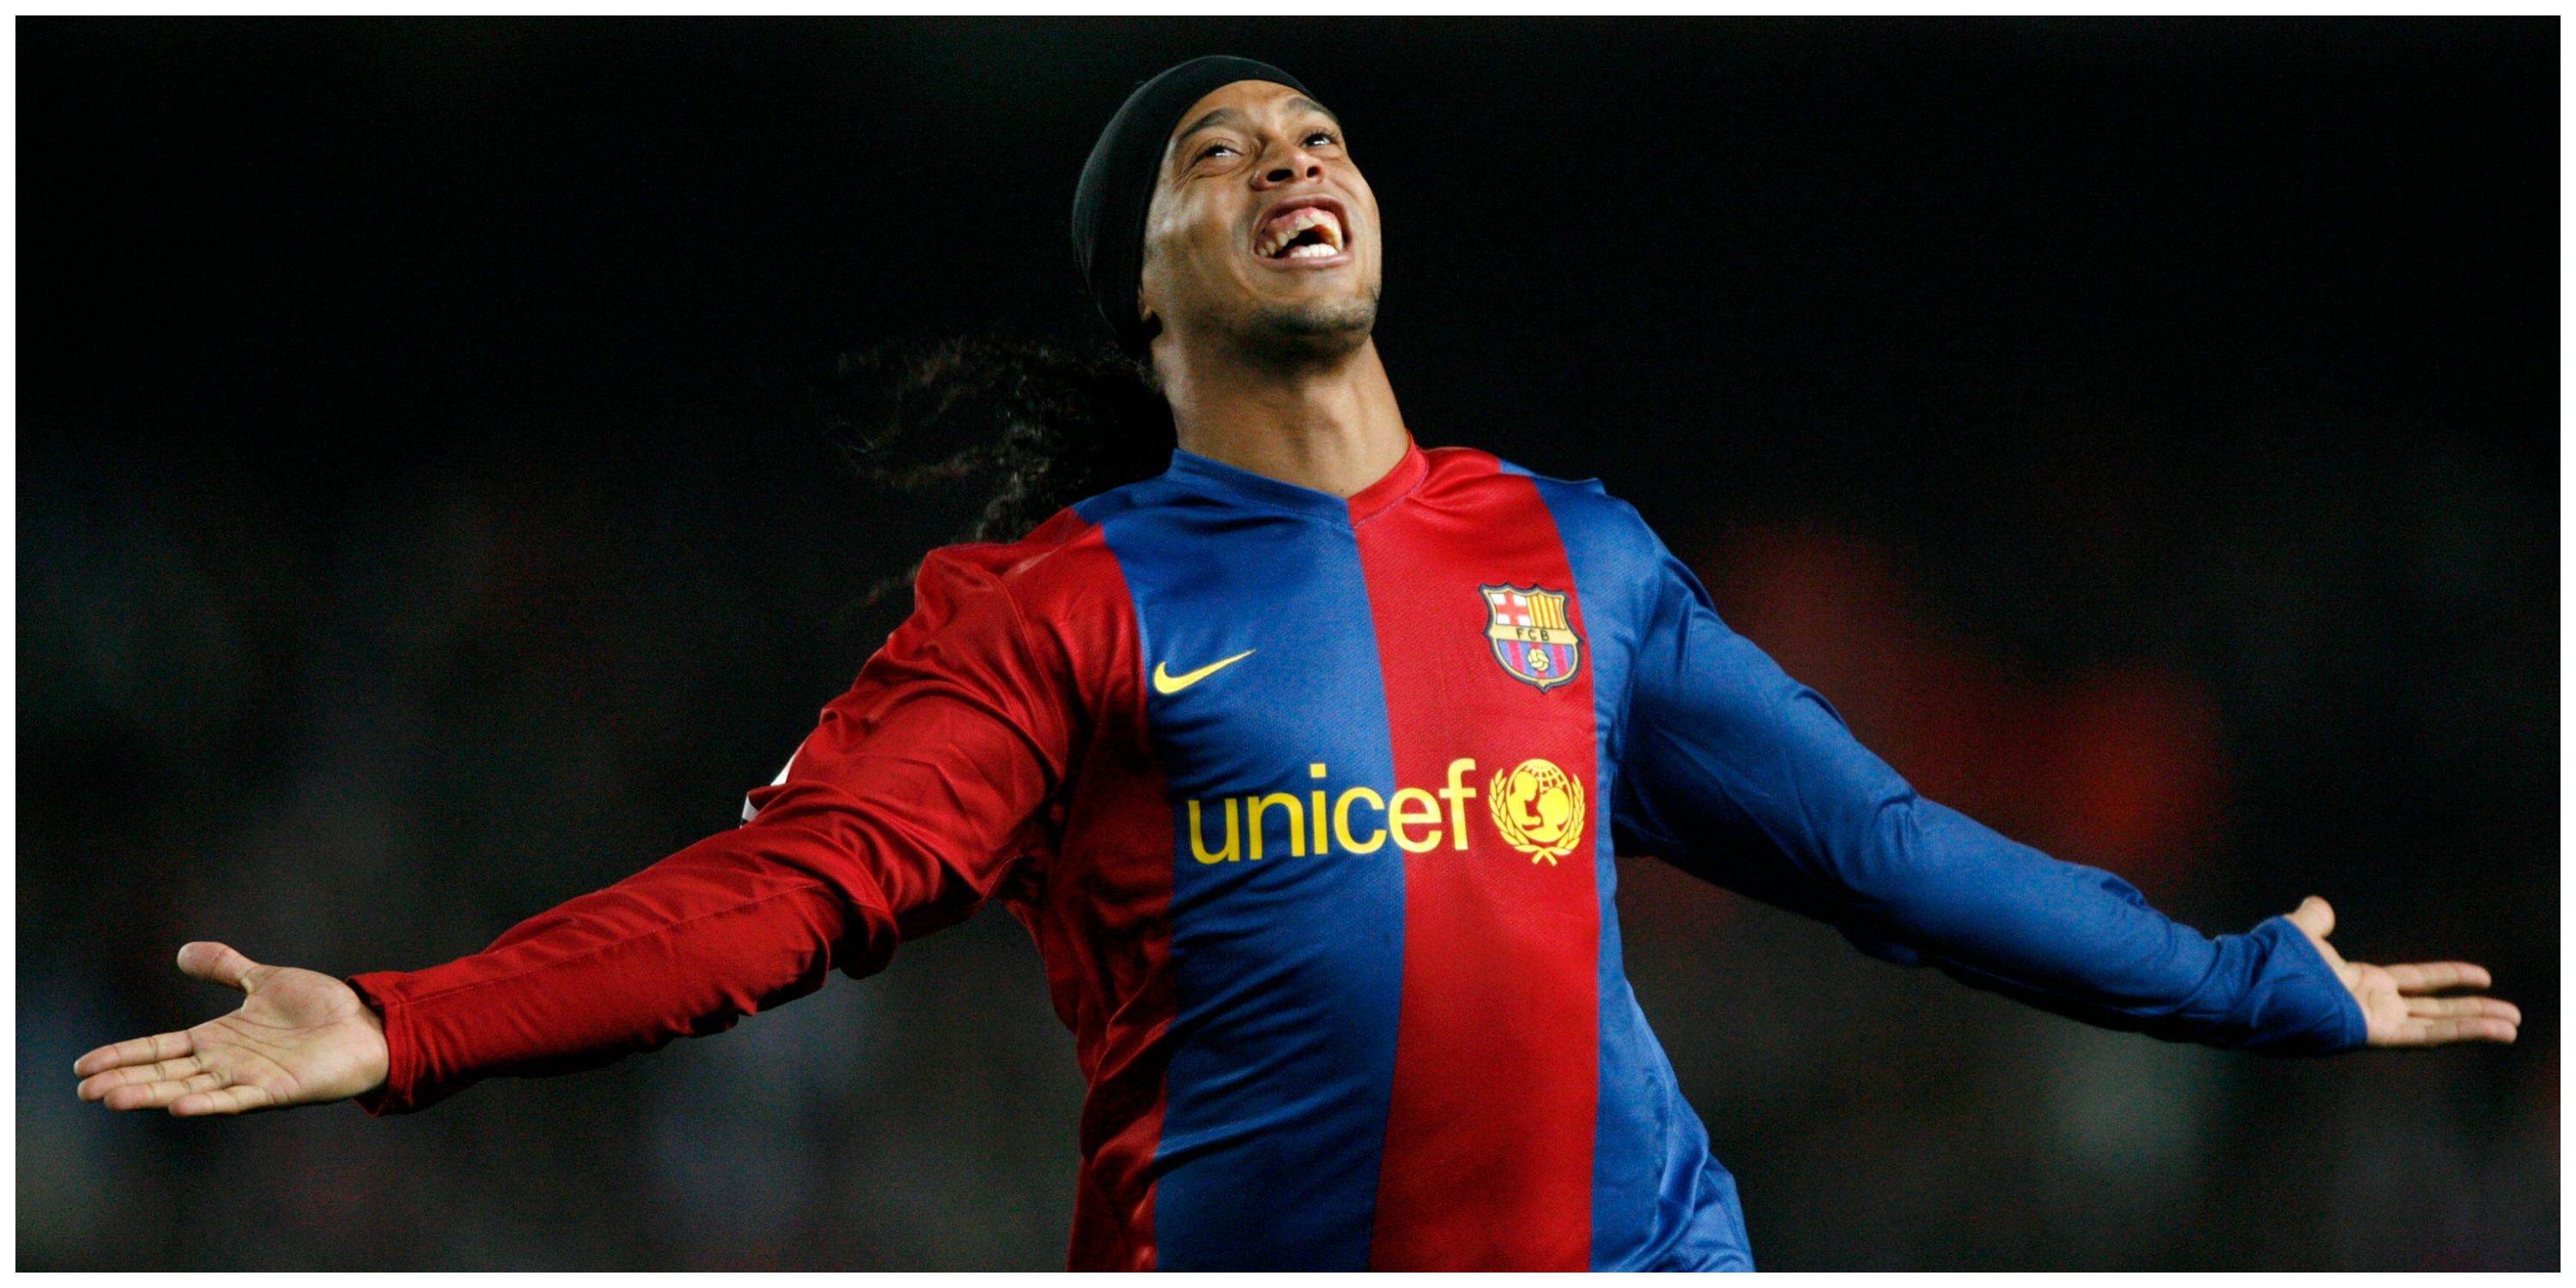 Ronaldinho at Barcelona